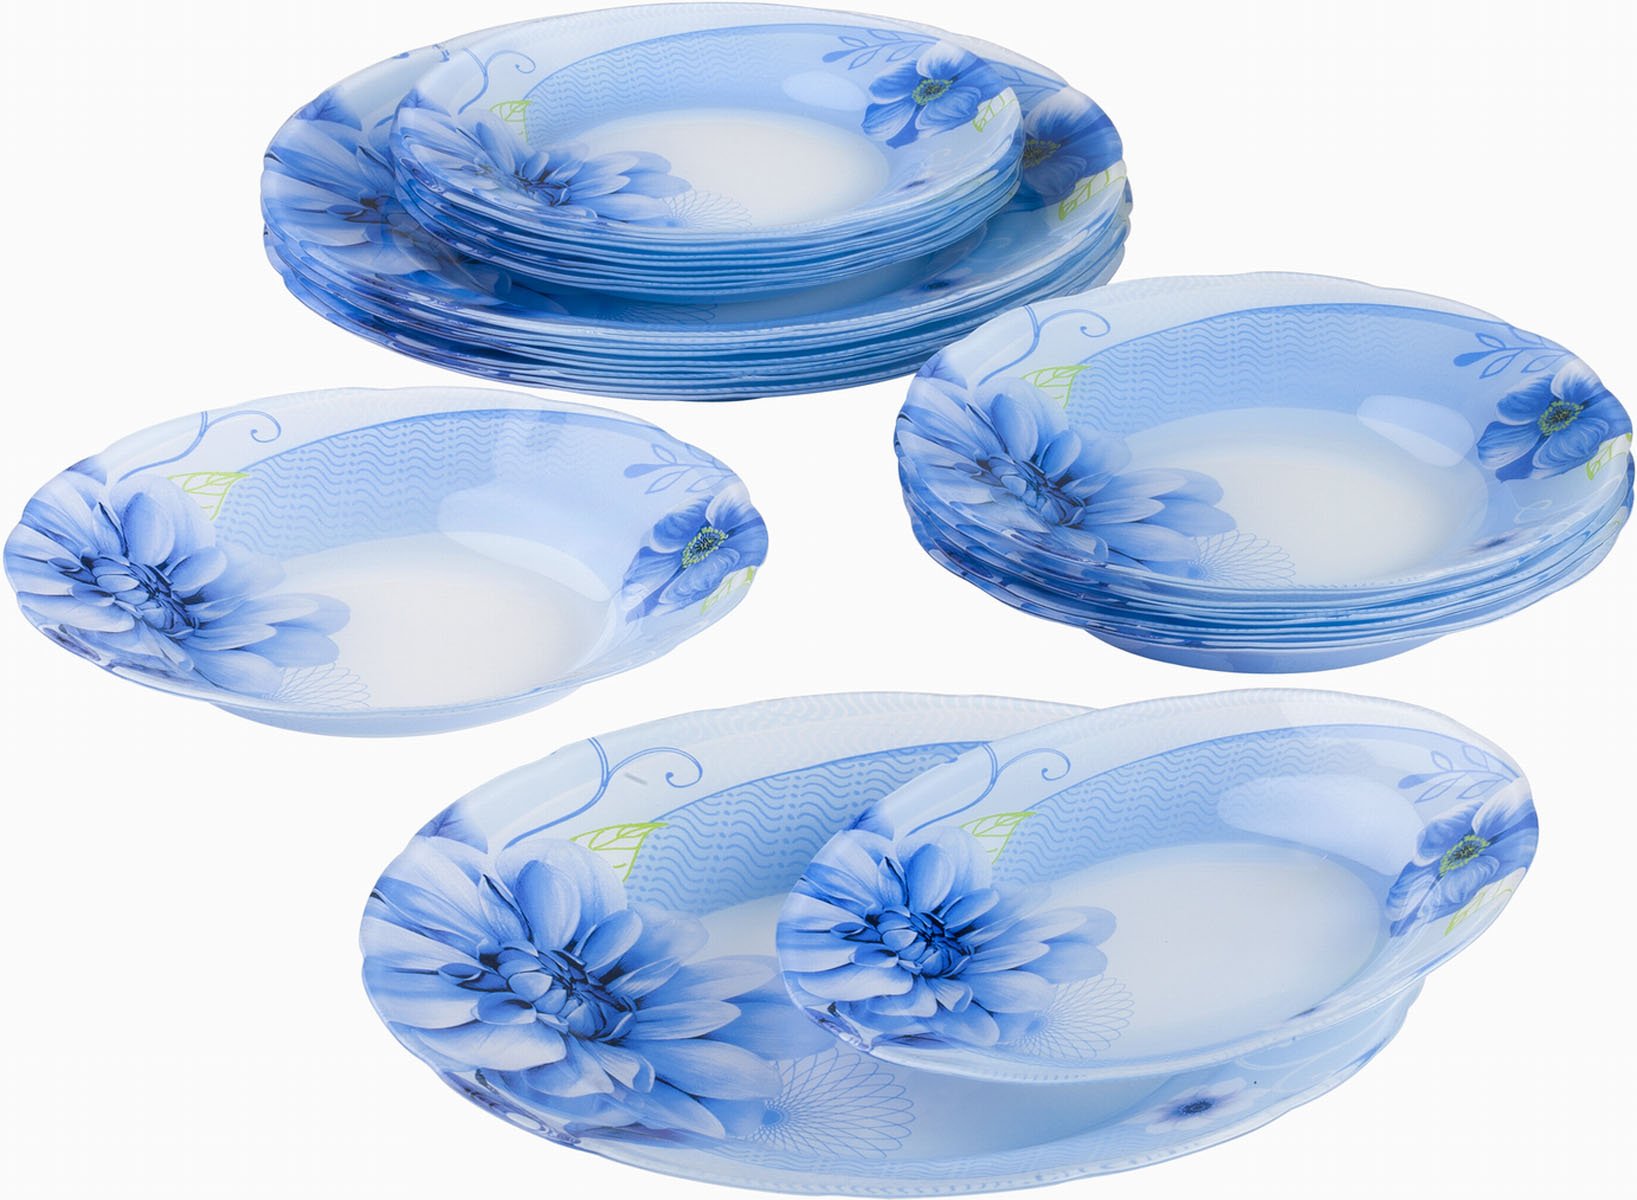 Купить посуду стекло недорого. Люминарк столовый сервиз синий. Сервиз столовый Luminarc Velina Arcopal 24 предмета 6 персон. Синяя посуда Люминарк. Посуда Люминарк из опалового стекла.